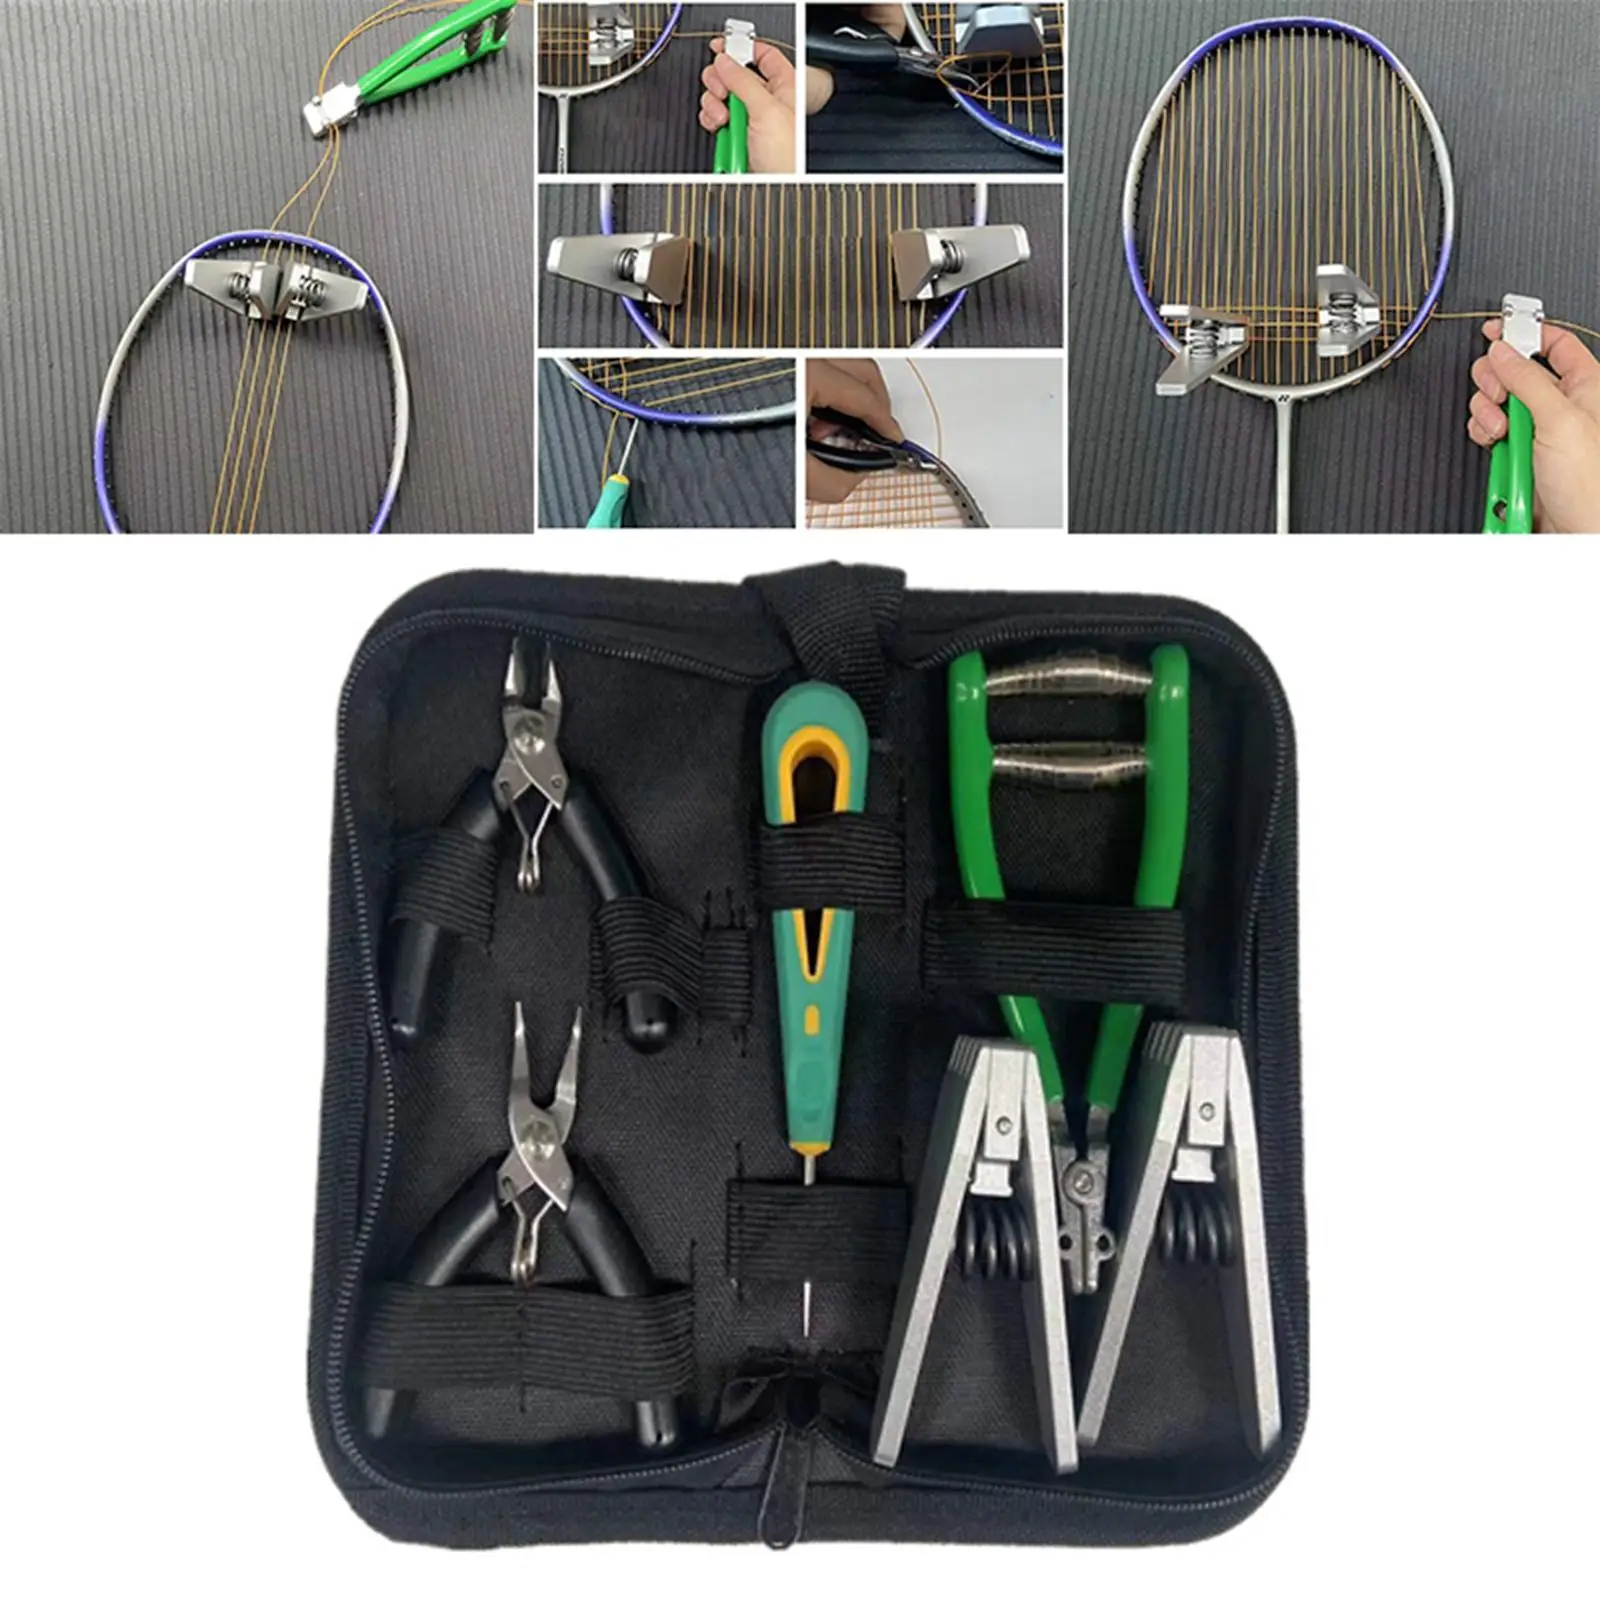 Portable Starting Stringing Clamp Tool Kit Badminton Tennis Racket Restring